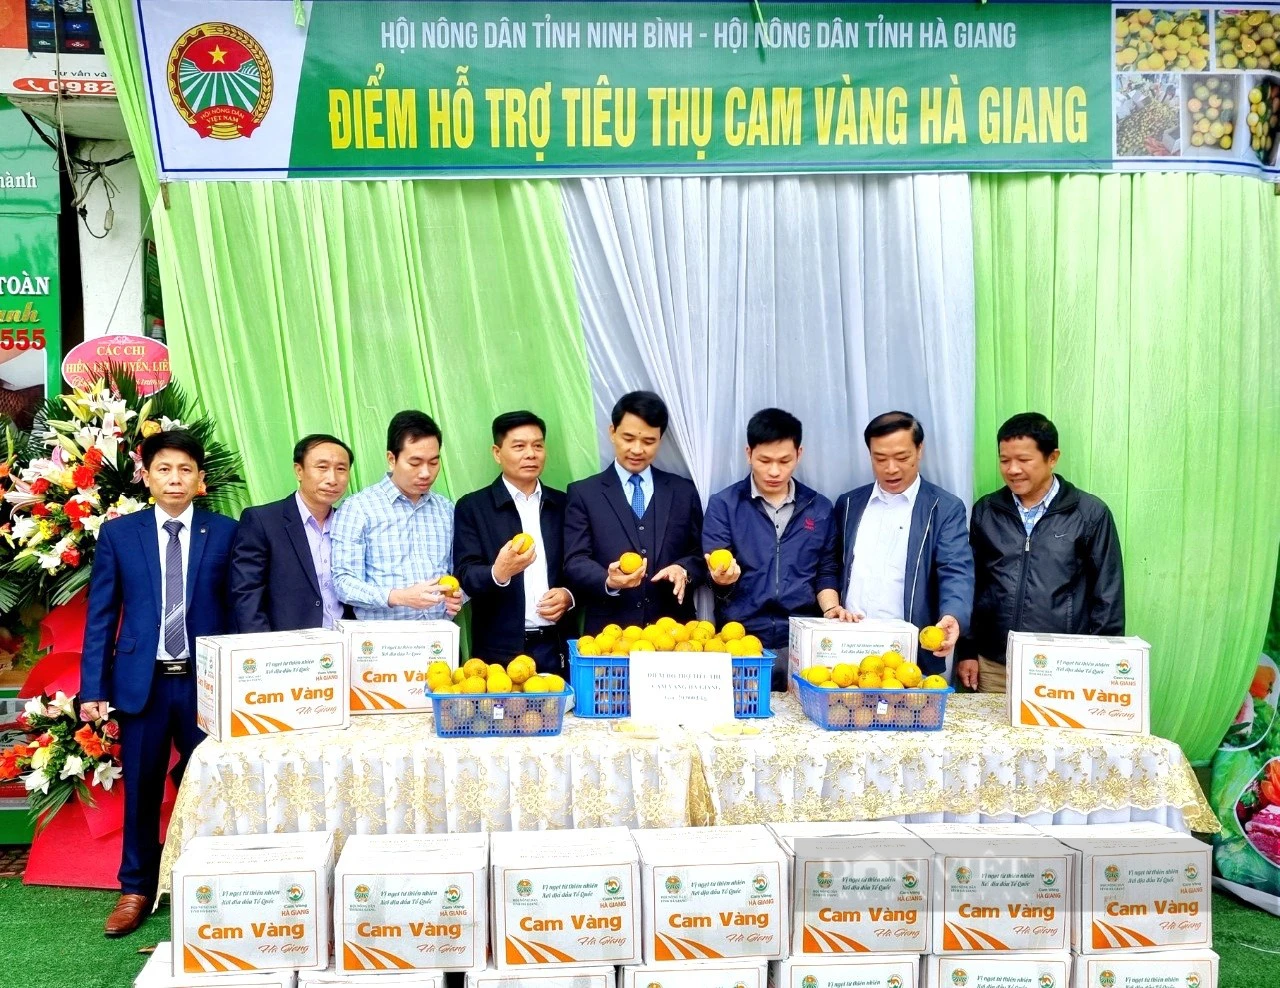 Hội Nông dân tỉnh Ninh Bình điểm sáng trong xây dựng chuỗi cửa hàng nông sản an toàn - Ảnh 9.